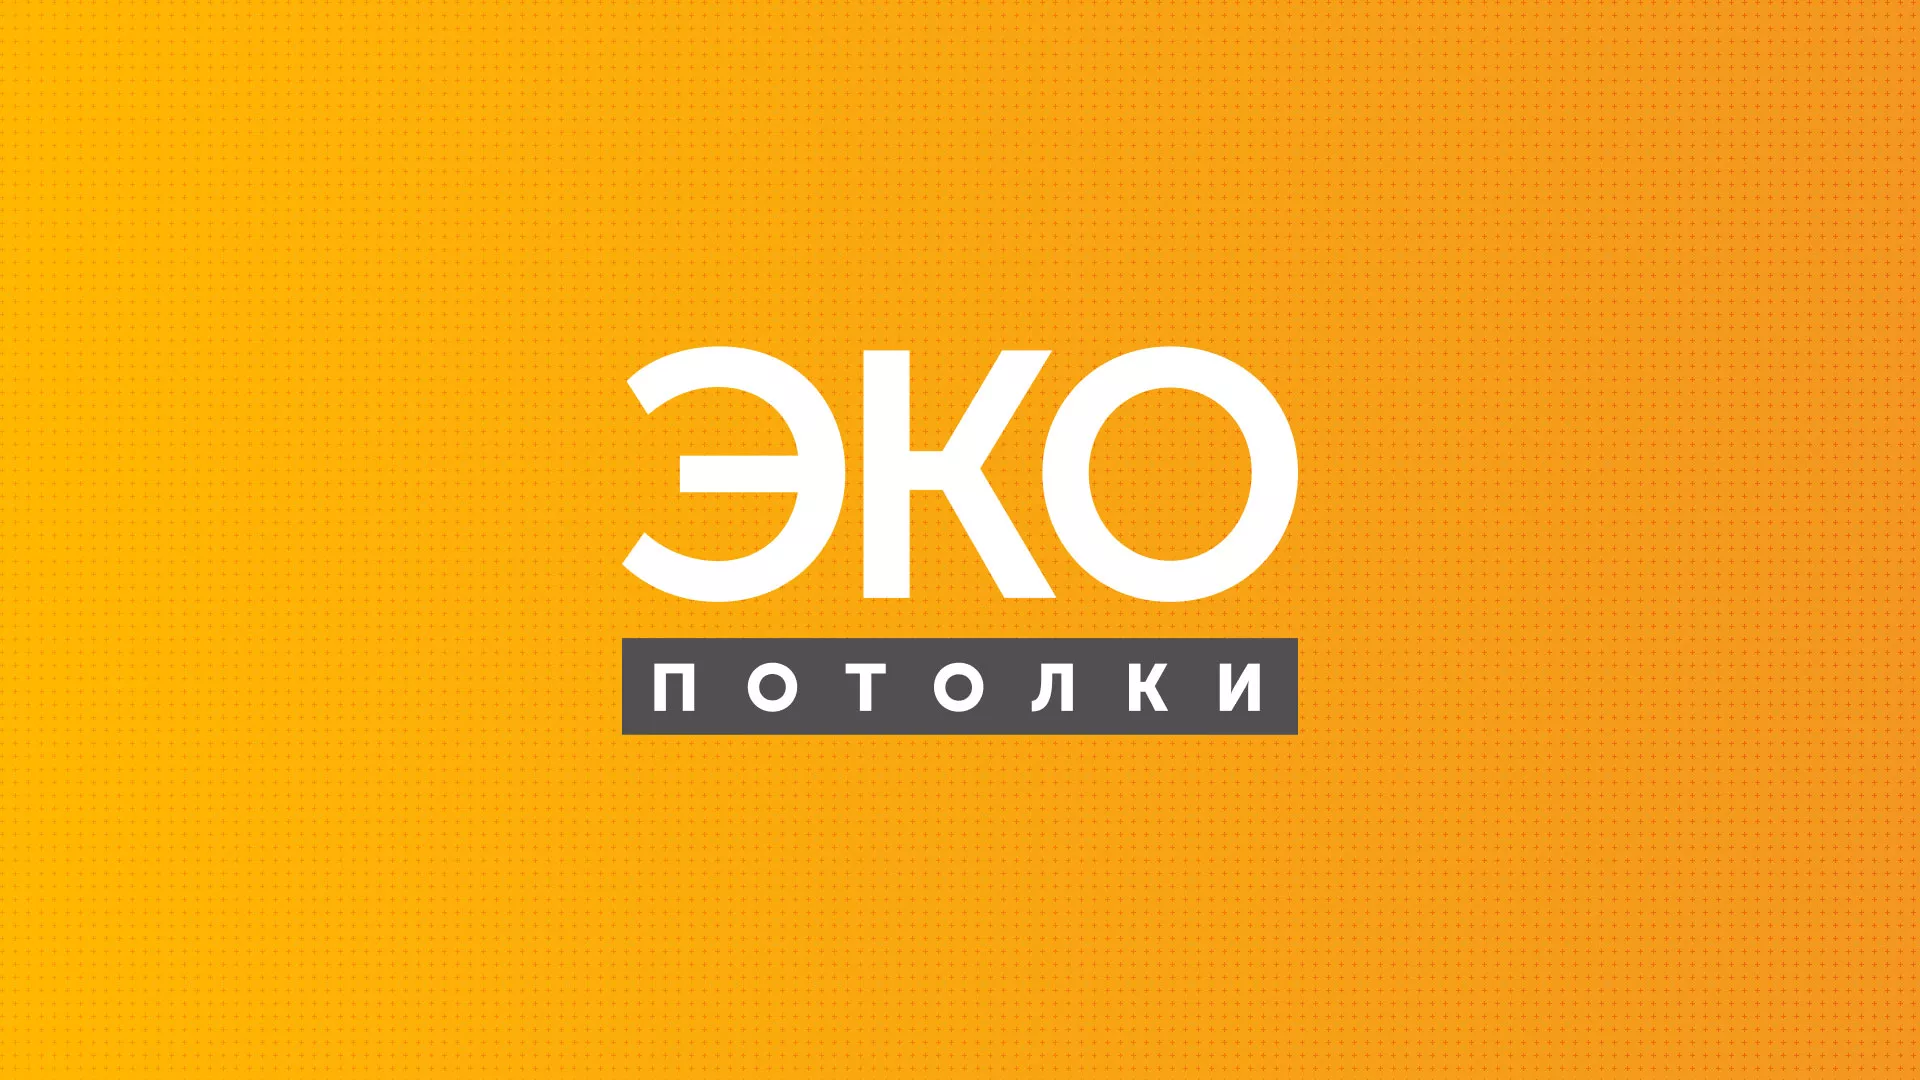 Разработка сайта по натяжным потолкам «Эко Потолки» в Александрове